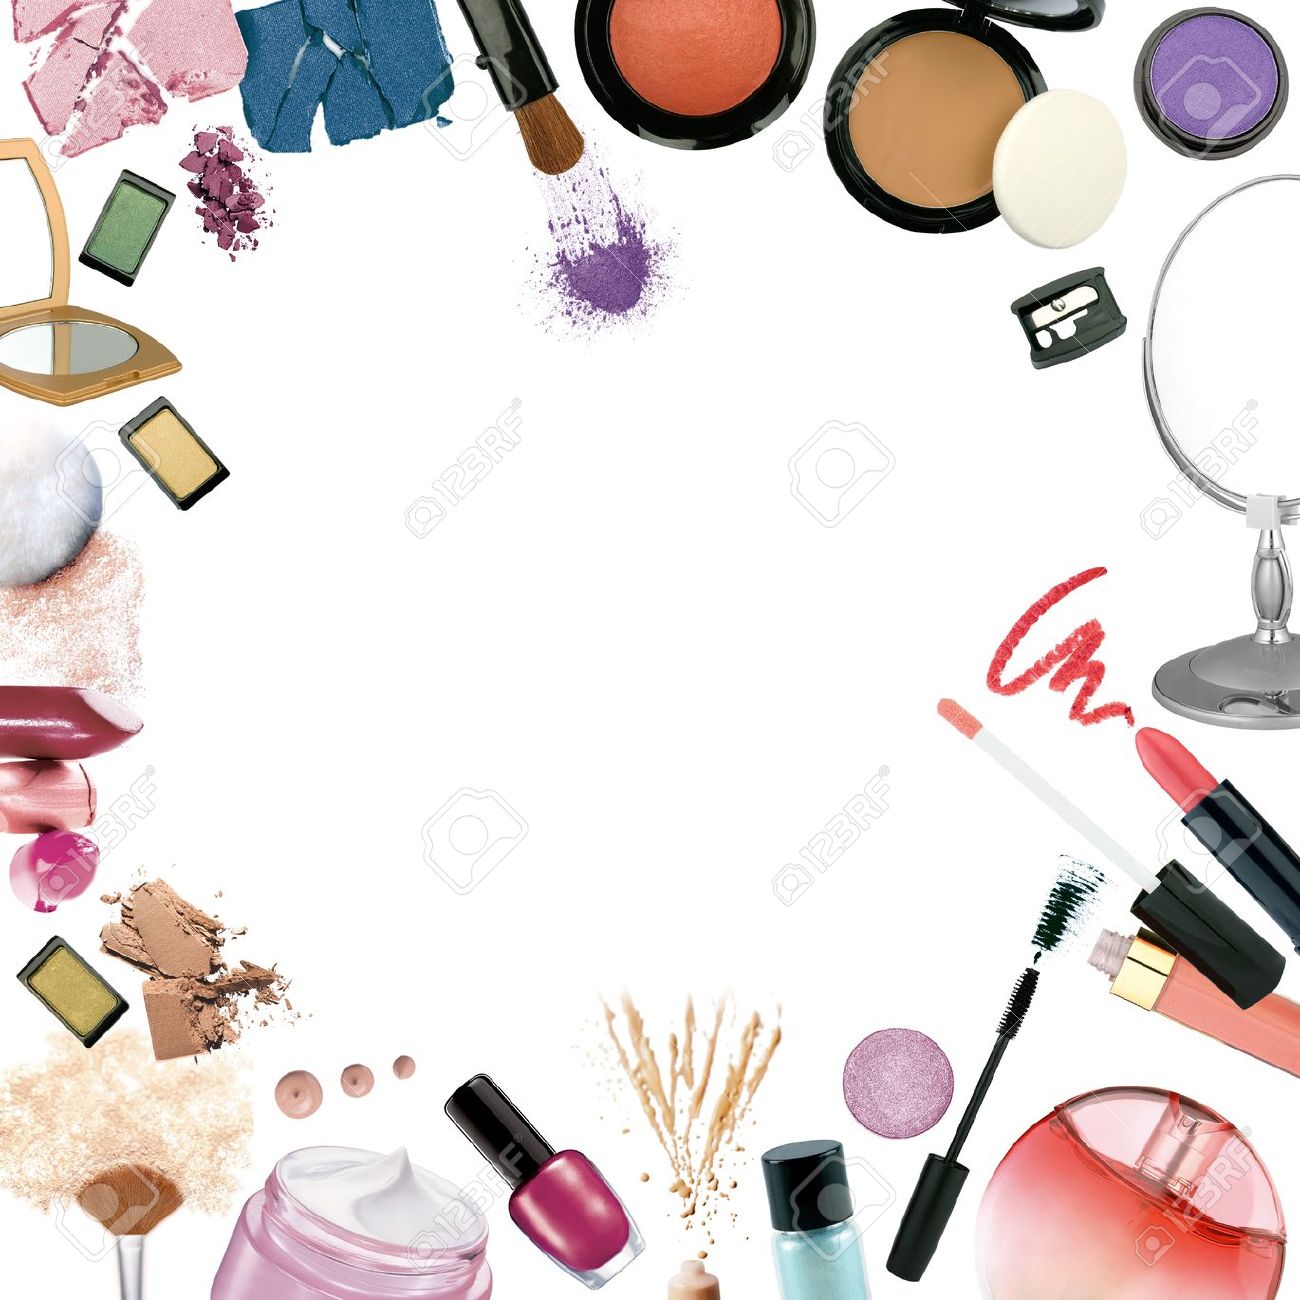 make up tapete tumblr,kosmetika,schönheit,illustration,lidschatten,stockfotografie